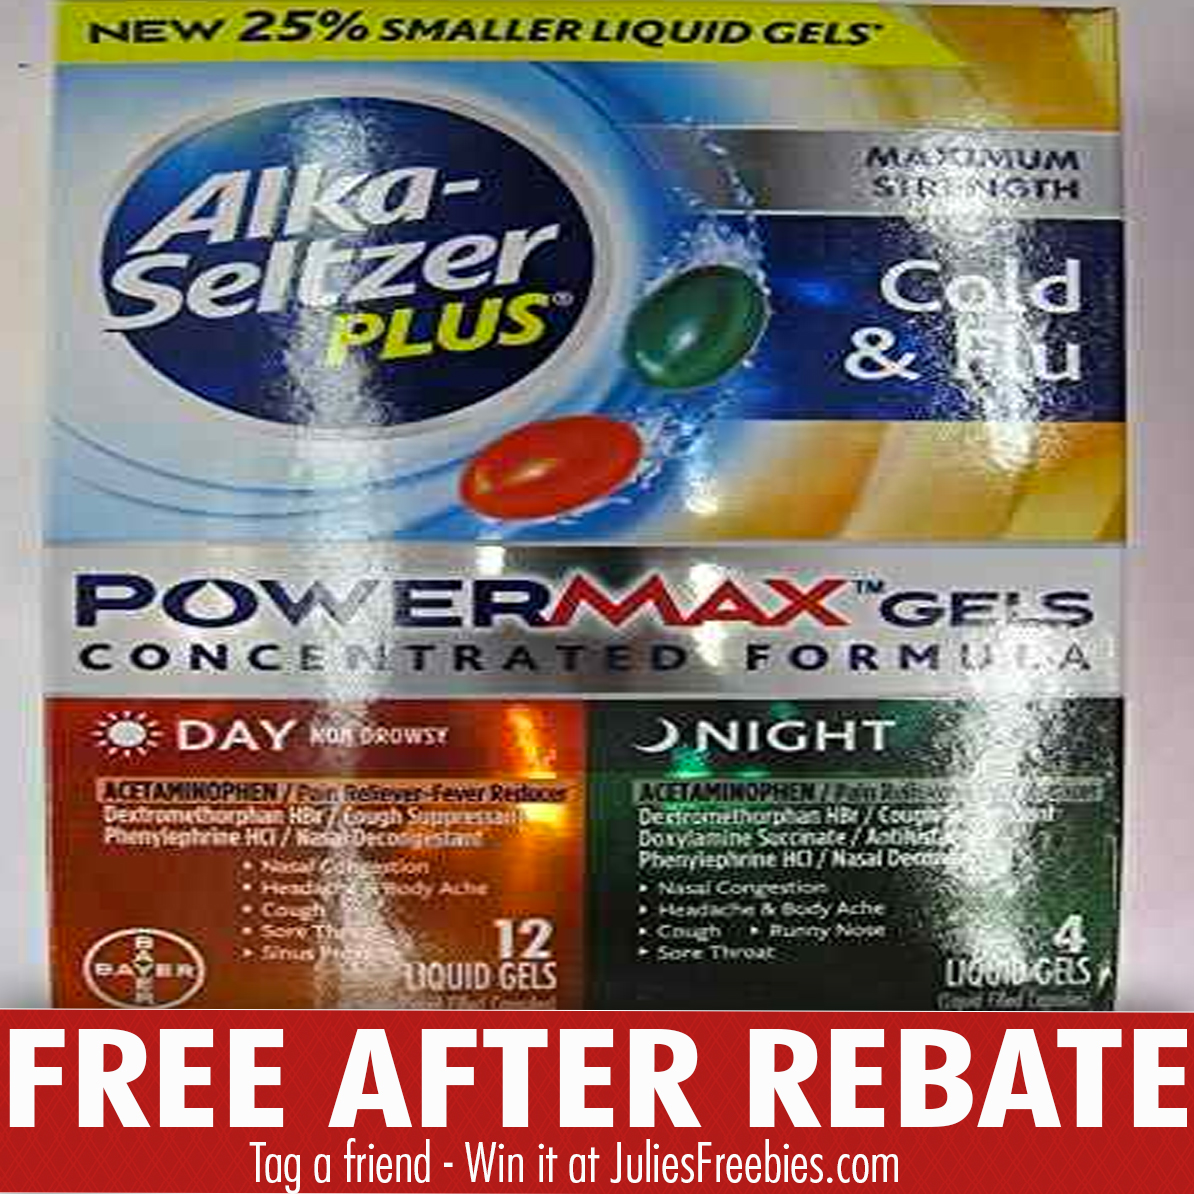 free-alka-seltzer-plus-powermax-gels-after-rebate-julie-s-freebies